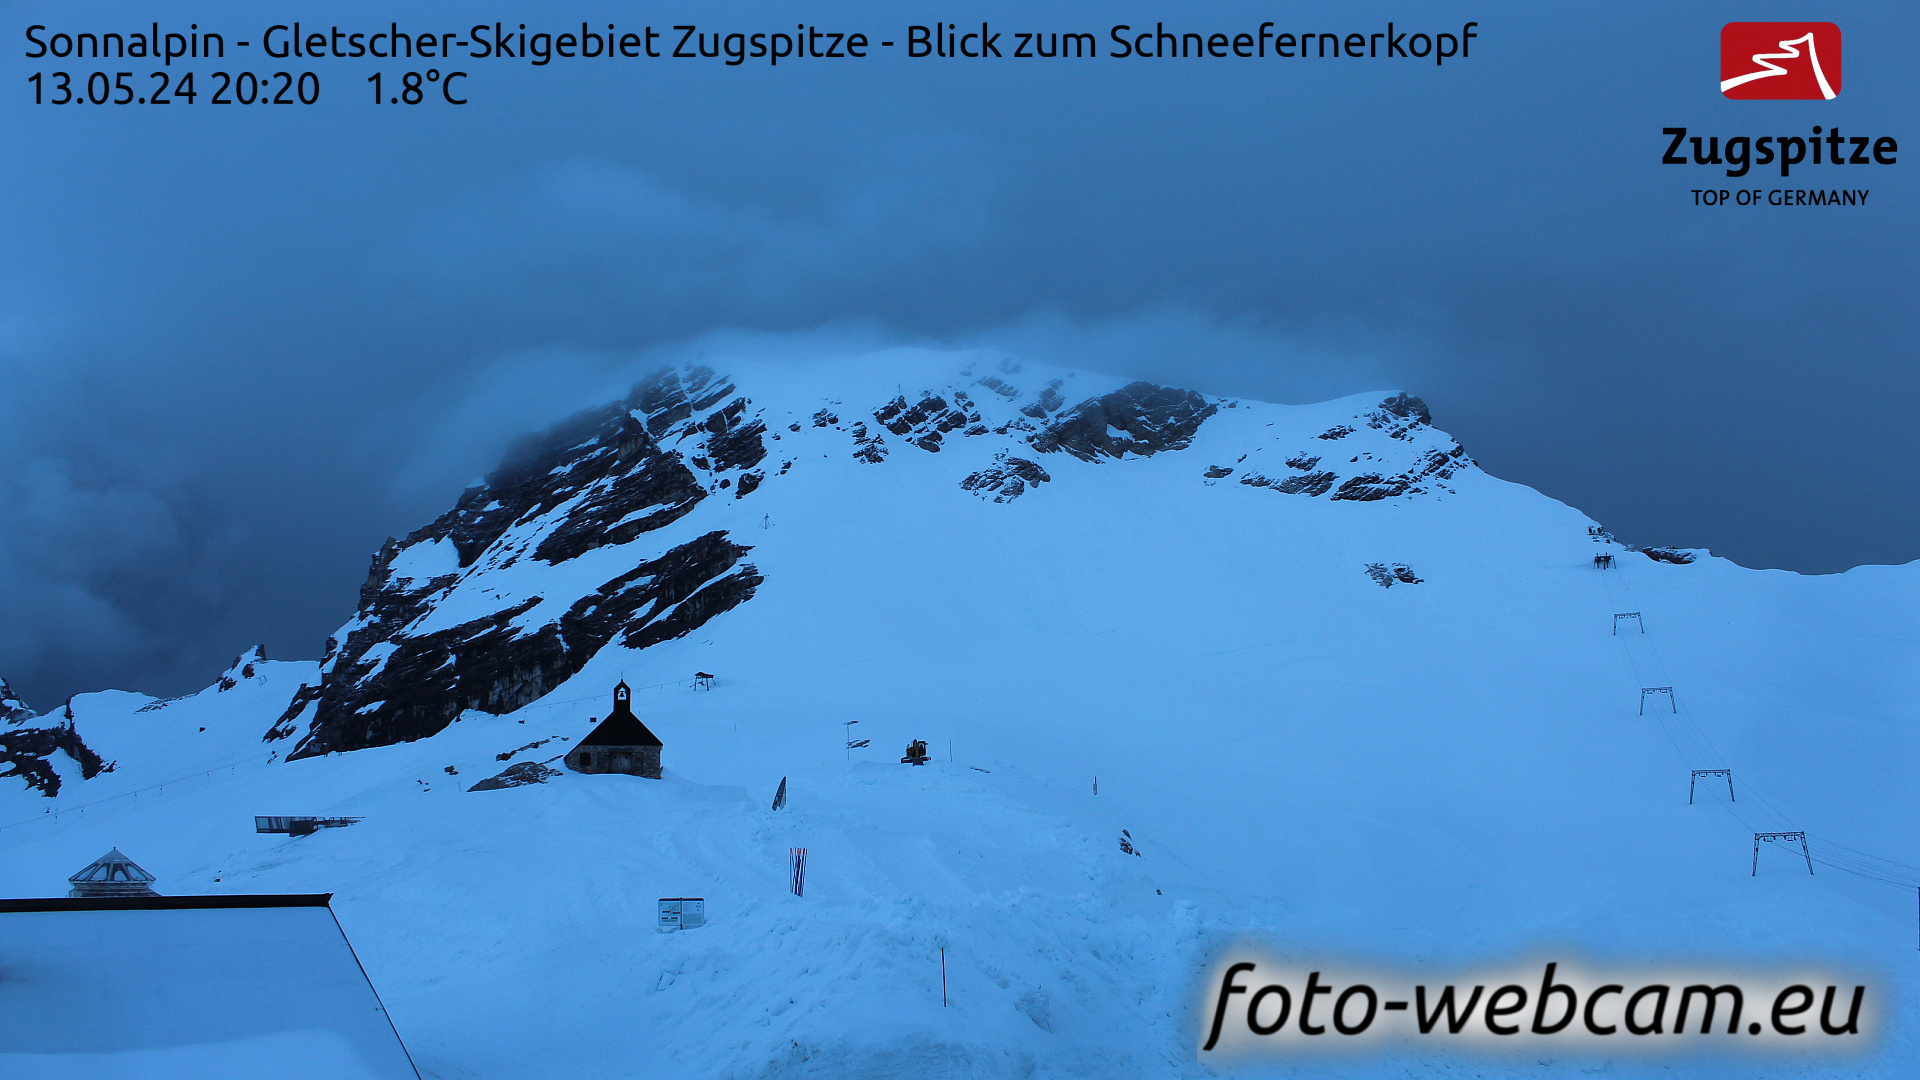 Zugspitze Di. 20:24